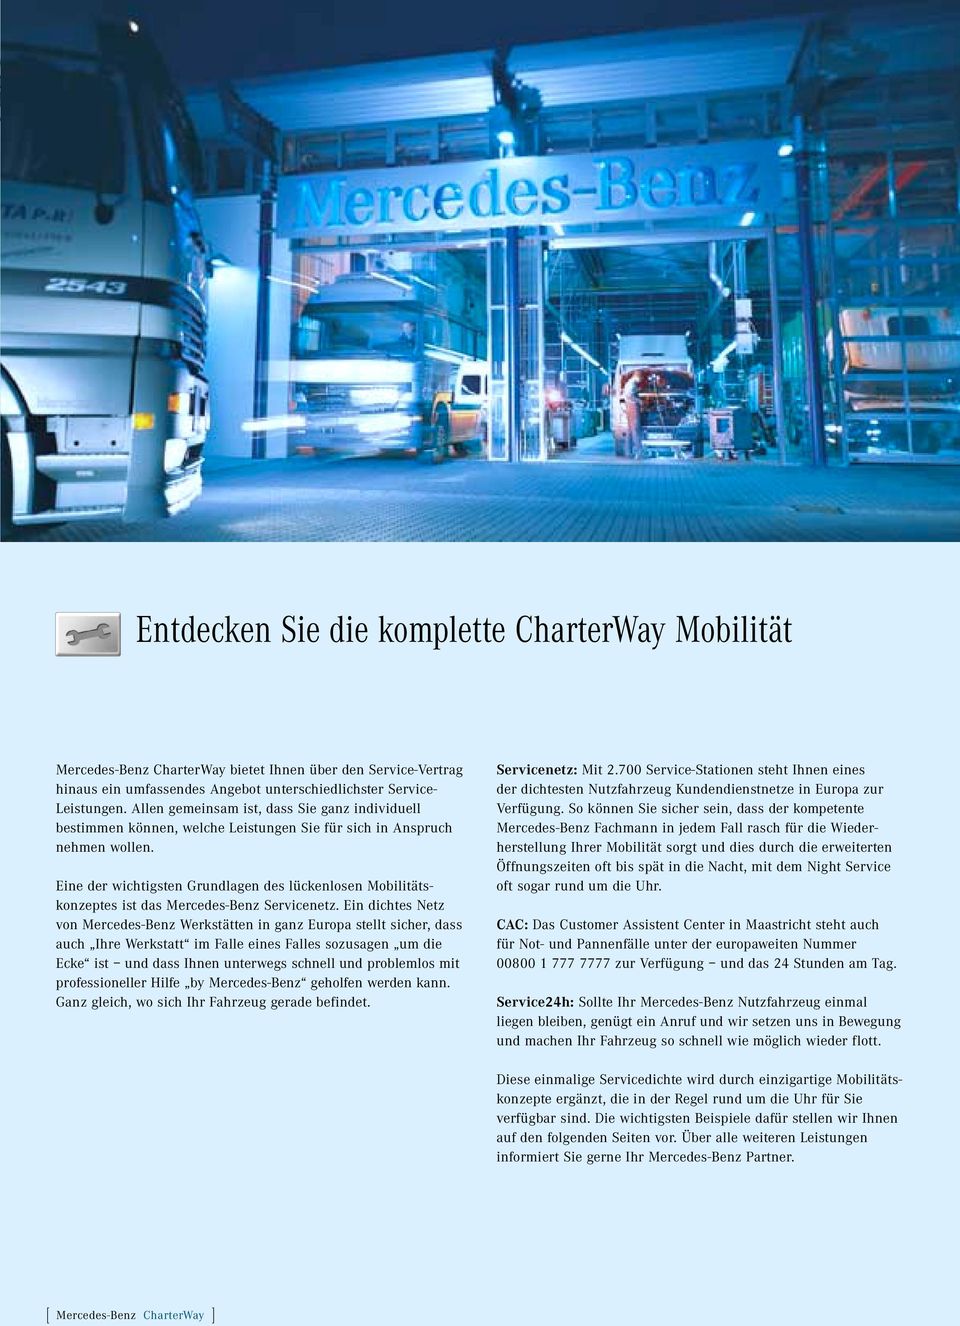 Eine der wichtigsten Grundlagen des lückenlosen Mobilitätskonzeptes ist das Mercedes-Benz Servicenetz.